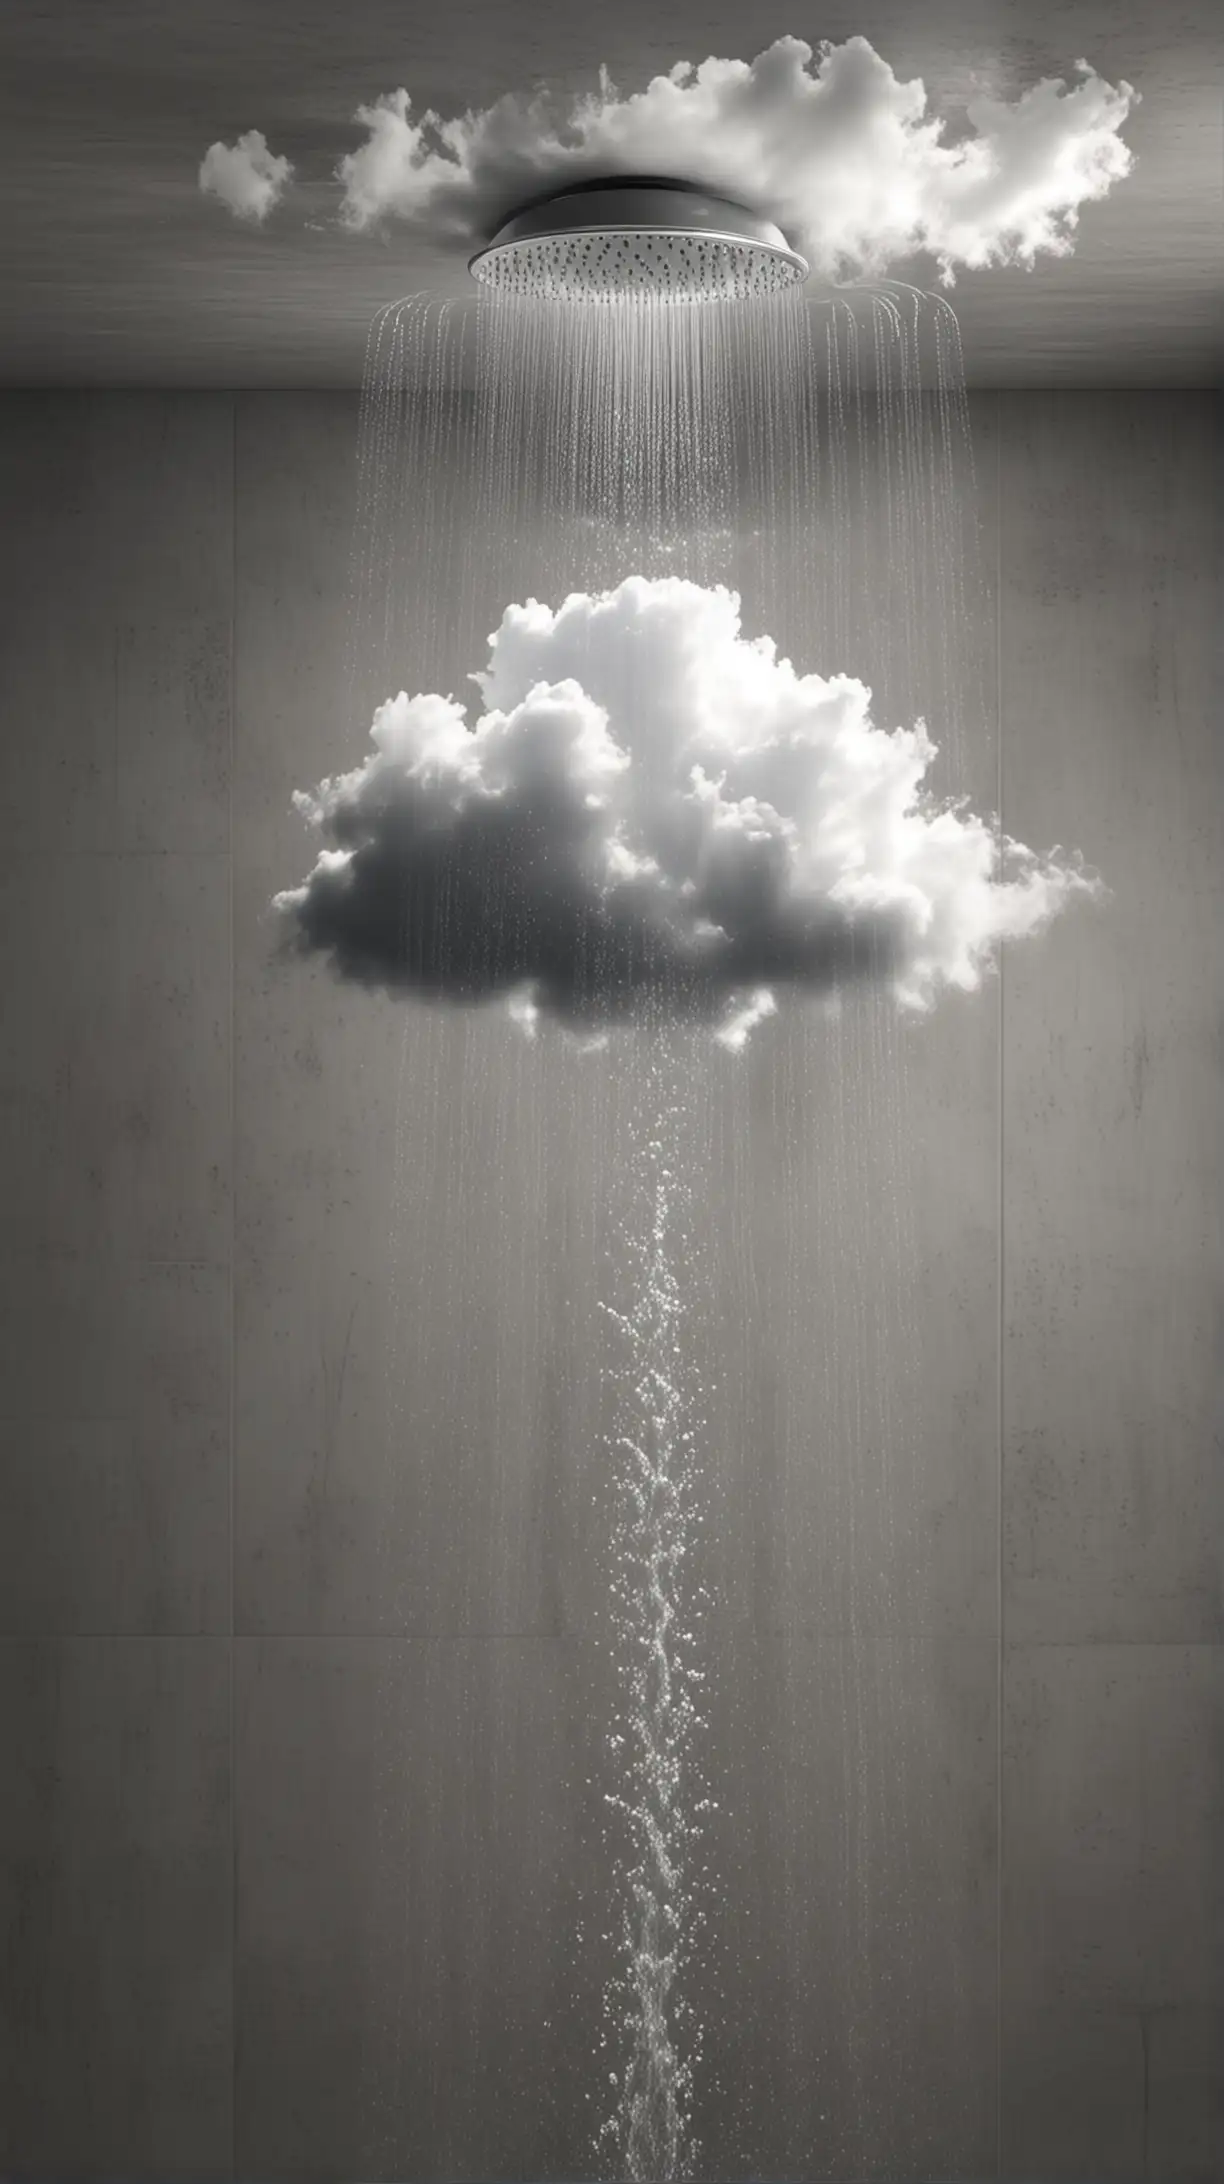 Erstelle mir ein Bild wo Wasser aus einem Duschkopf Läuft in eine Wolke hinein. Realistisch
